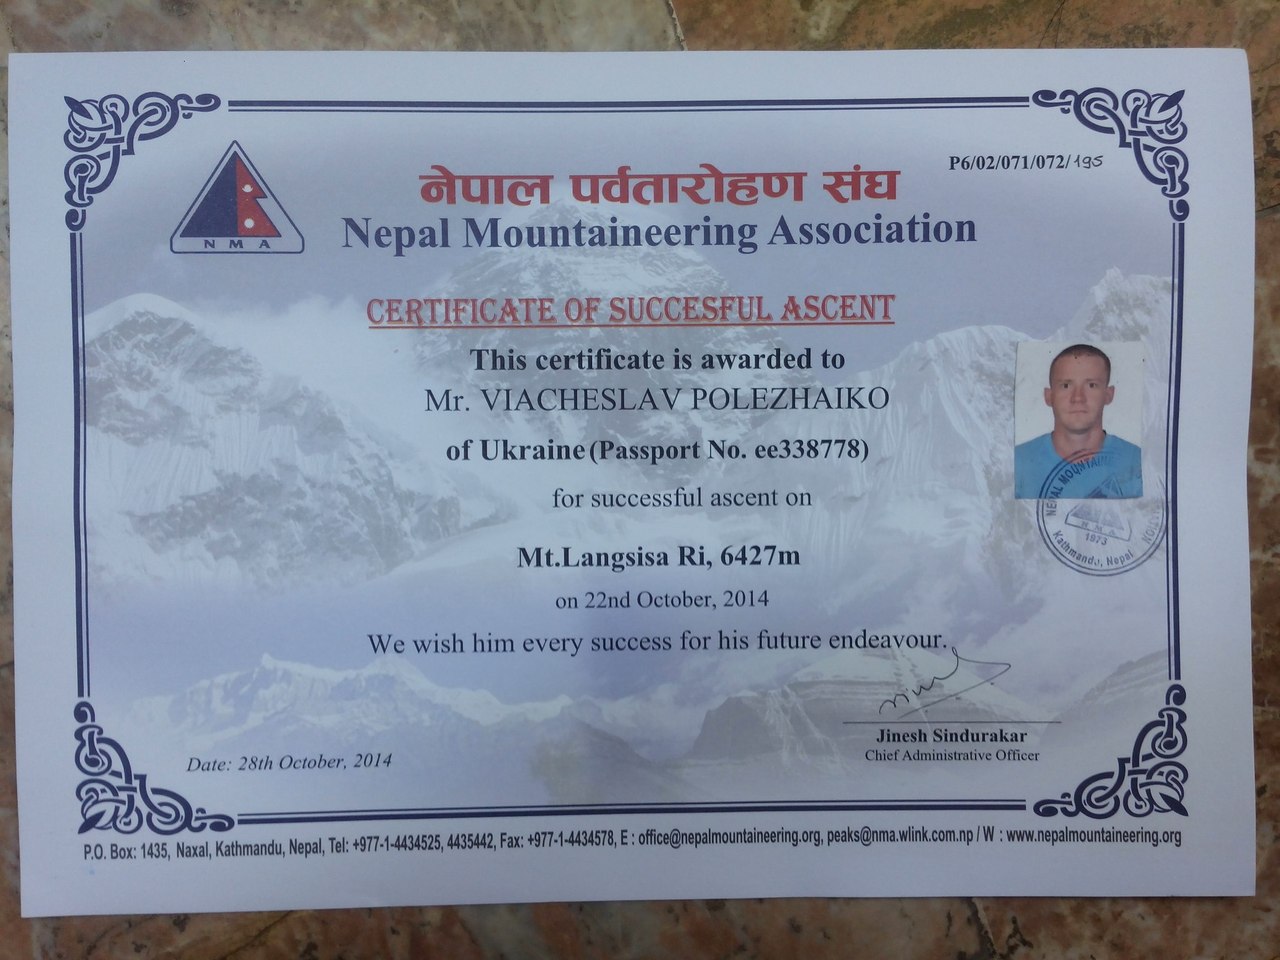 Сертификат о восхождении на вершину пика Лангшиса Ри (Langshisa Ri) высотой 6427 м